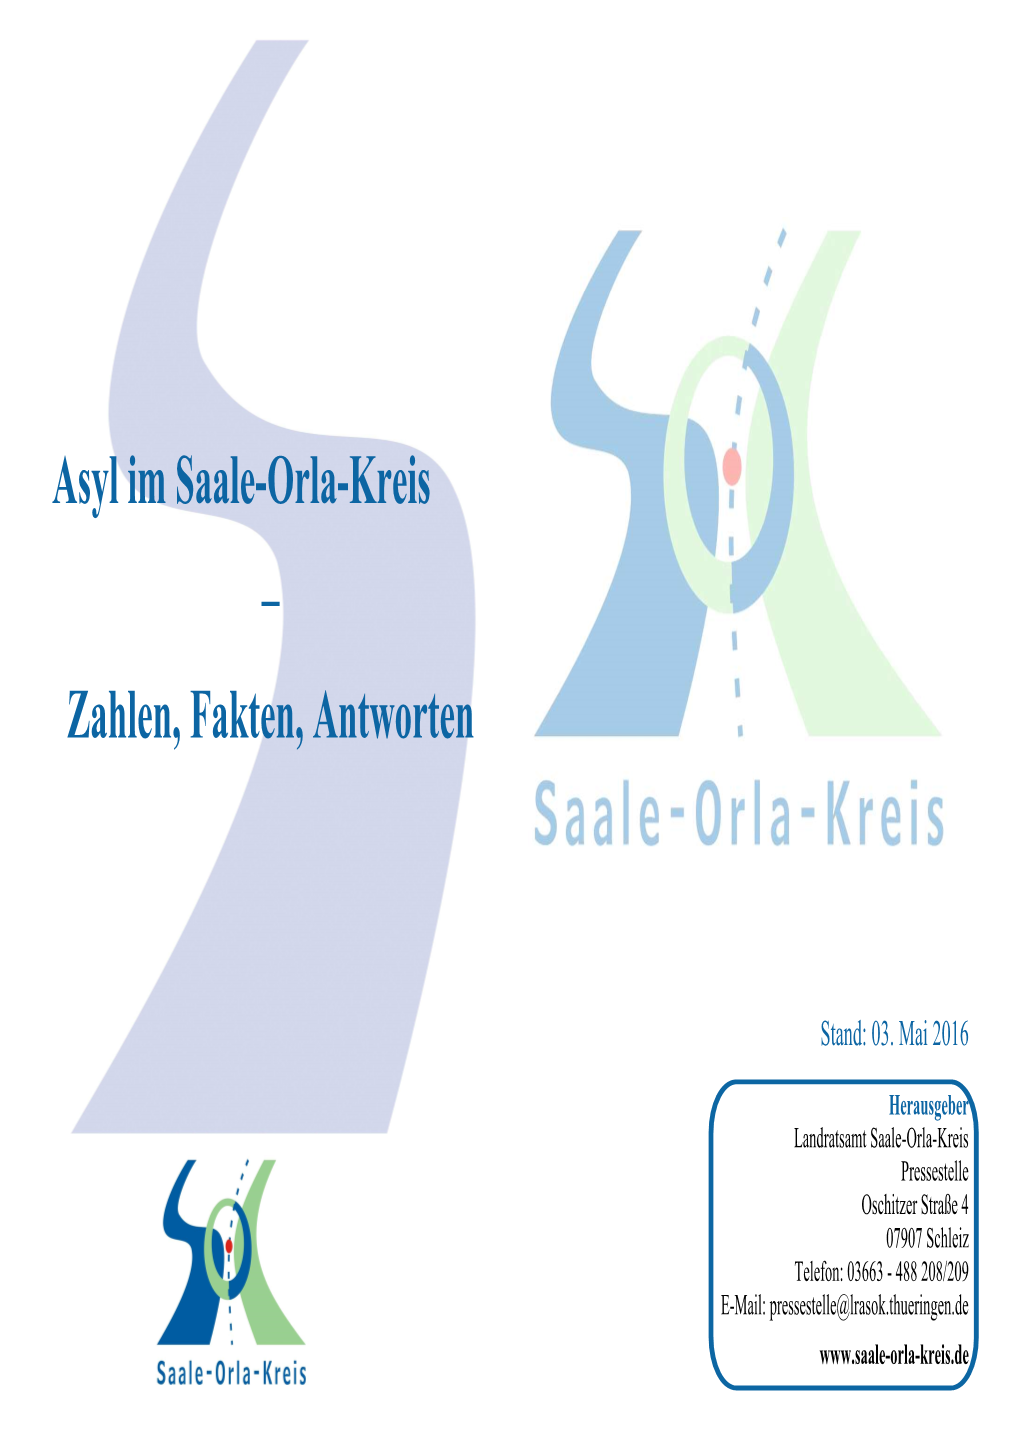 Asyl Im Saale-Orla-Kreis – Zahlen, Fakten, Antworten